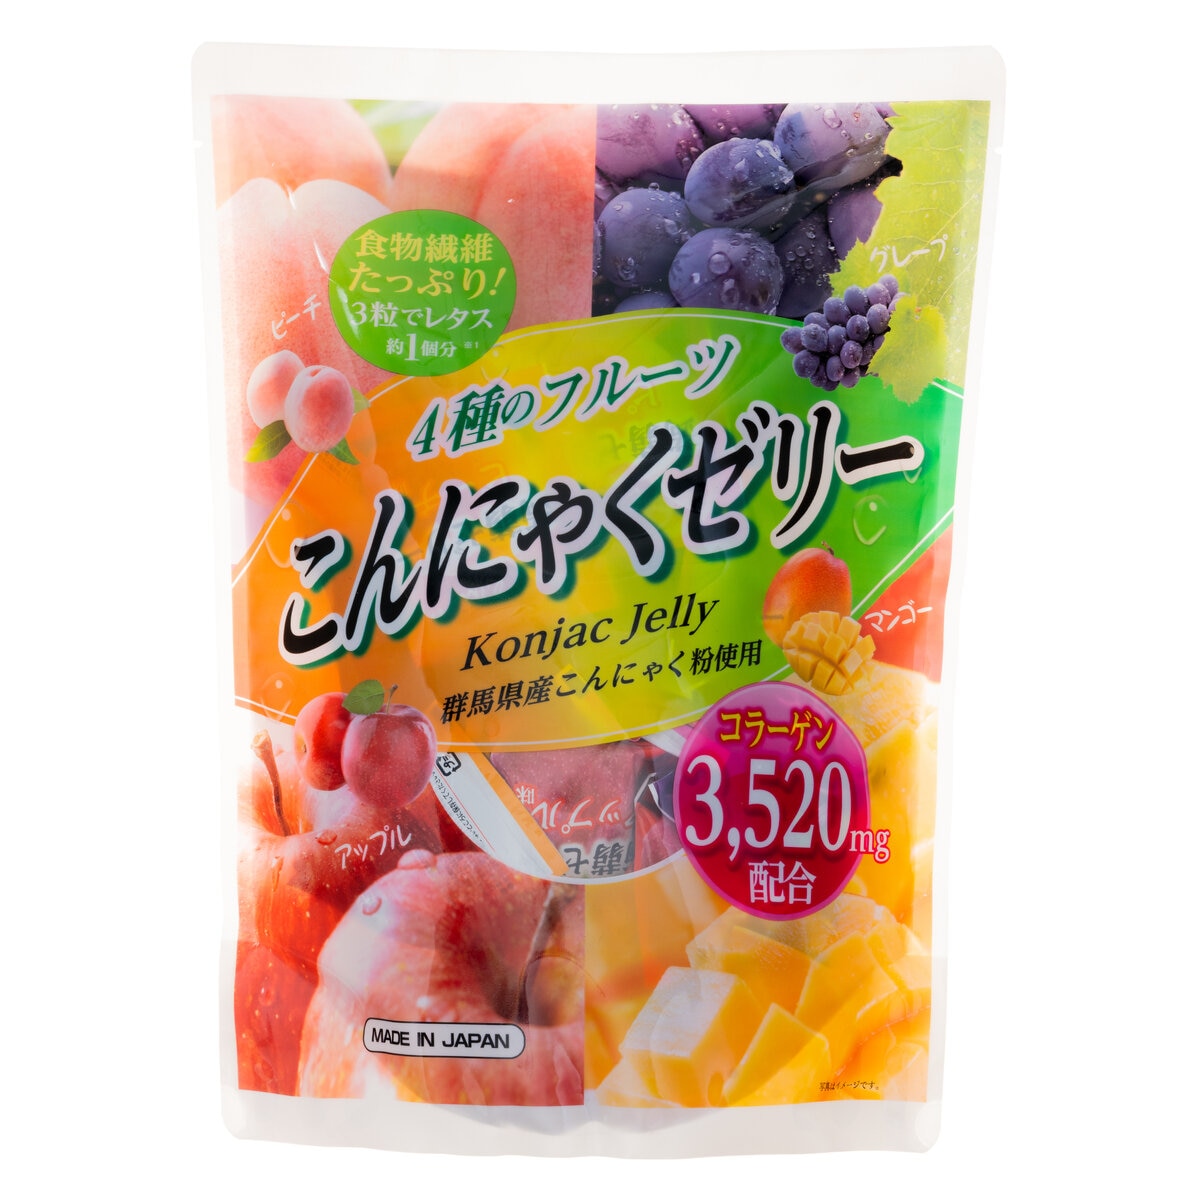 4種のフルーツ こんにゃくゼリー 64個入り Costco Japan